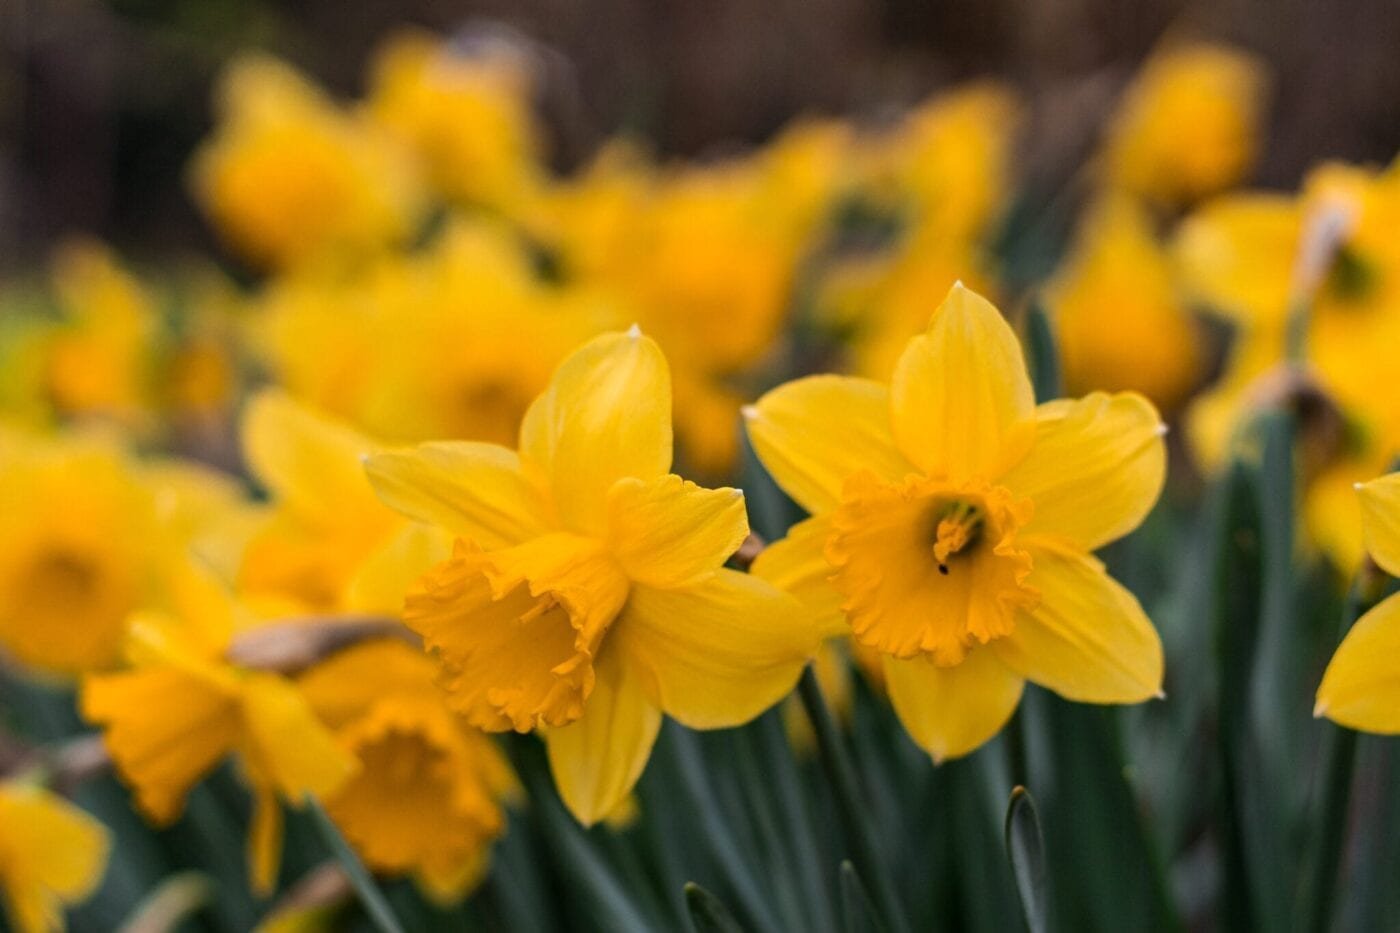 Daffodil's